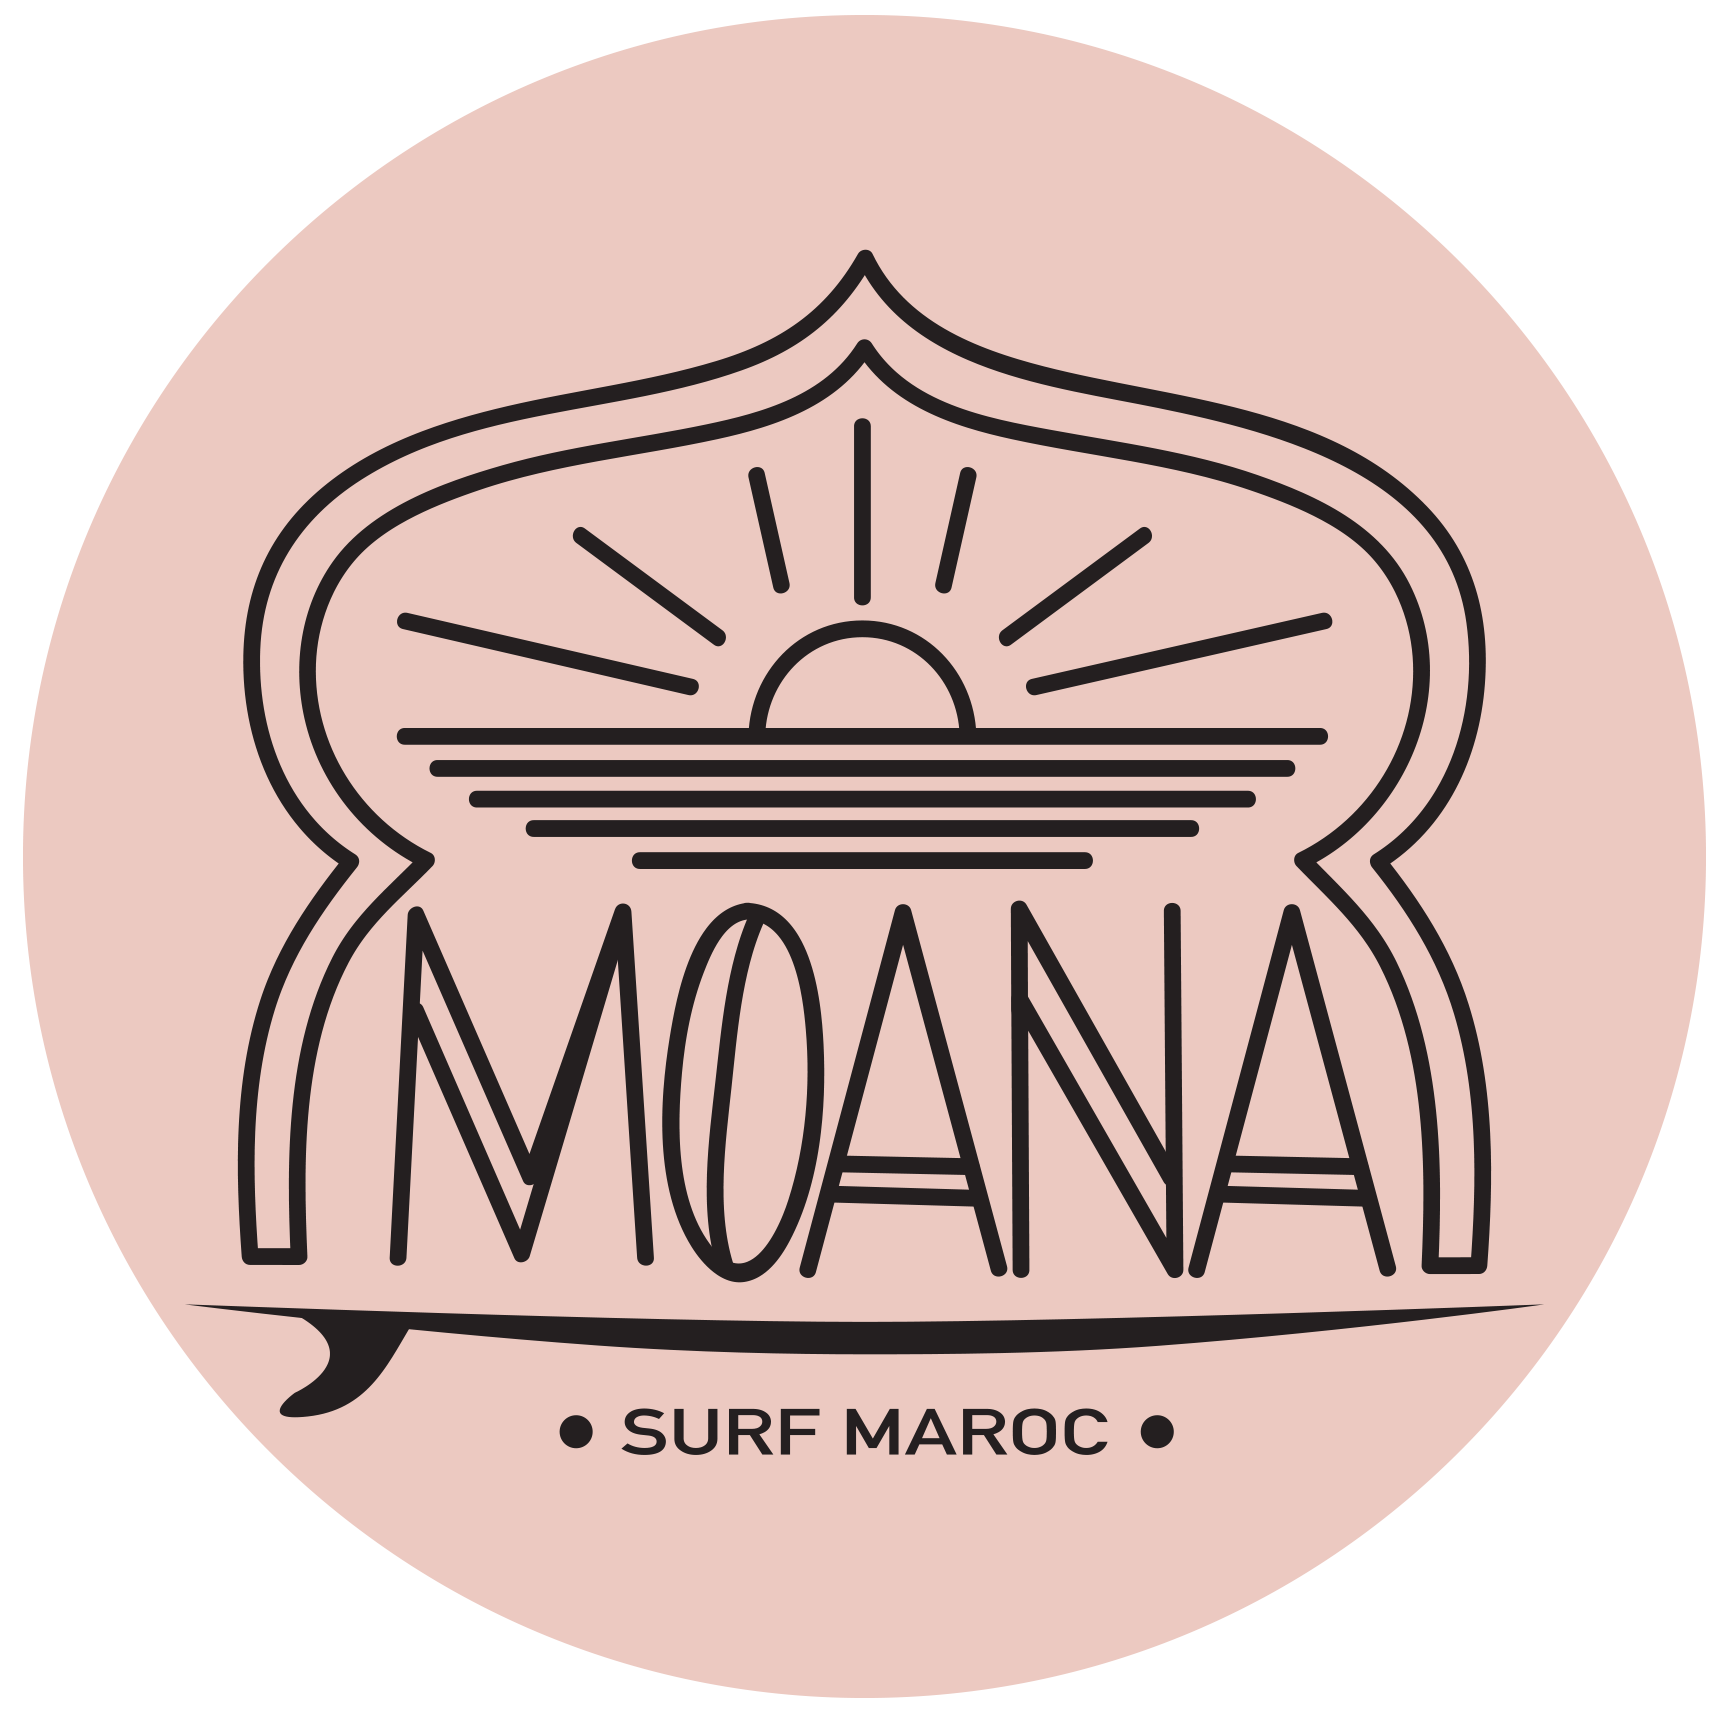 Moana Surf Maroc